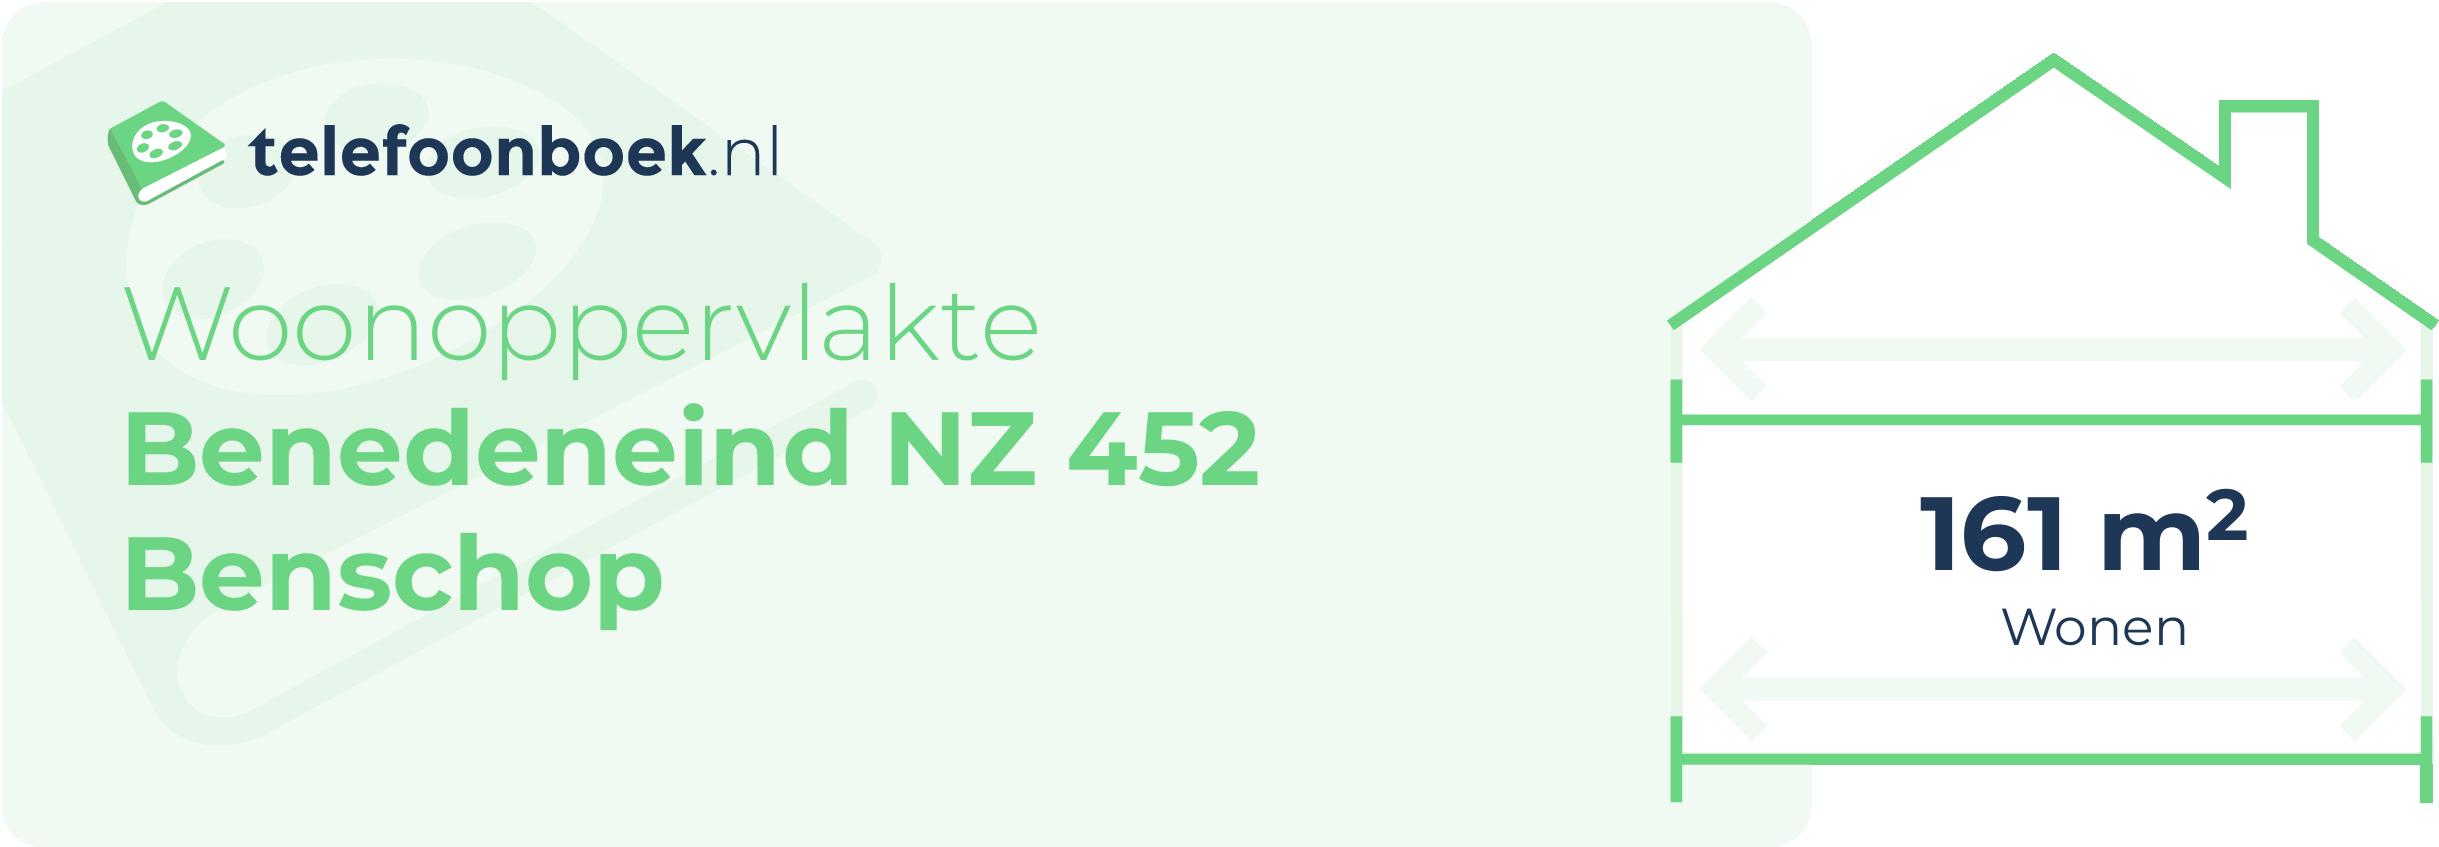 Woonoppervlakte Benedeneind NZ 452 Benschop